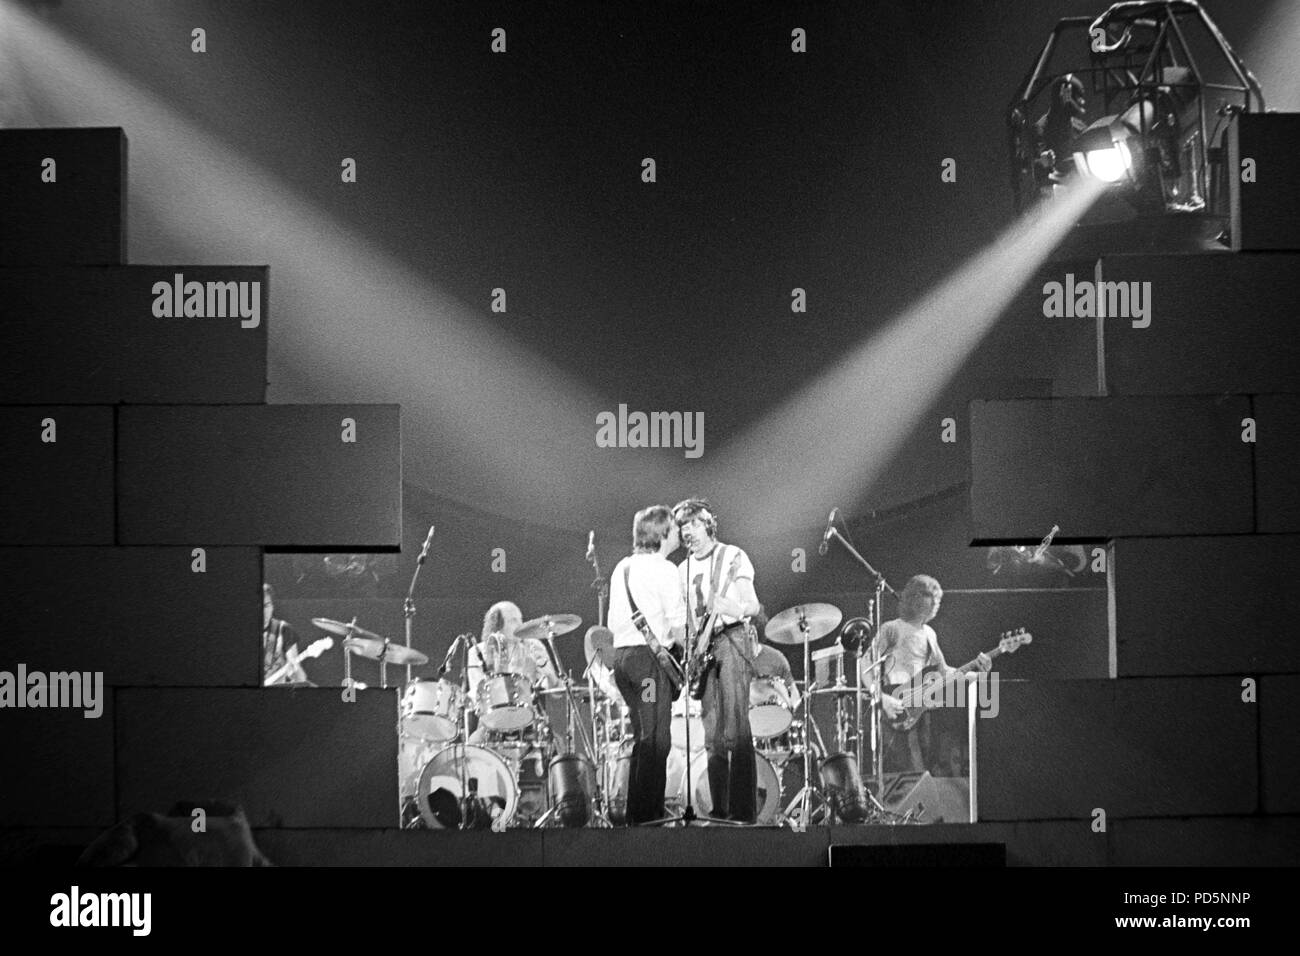 Dortmund, Germania, 20th. Feb.1981 - David Gilmour (sinistra) e Roger Waters del british rock psichedelico band PINK FLOYD eseguendo la parete con un concerto presso la Westfalenhalle di Dortmund/Germania (immagine digitale da una b/w-film-negativo) Foto Stock